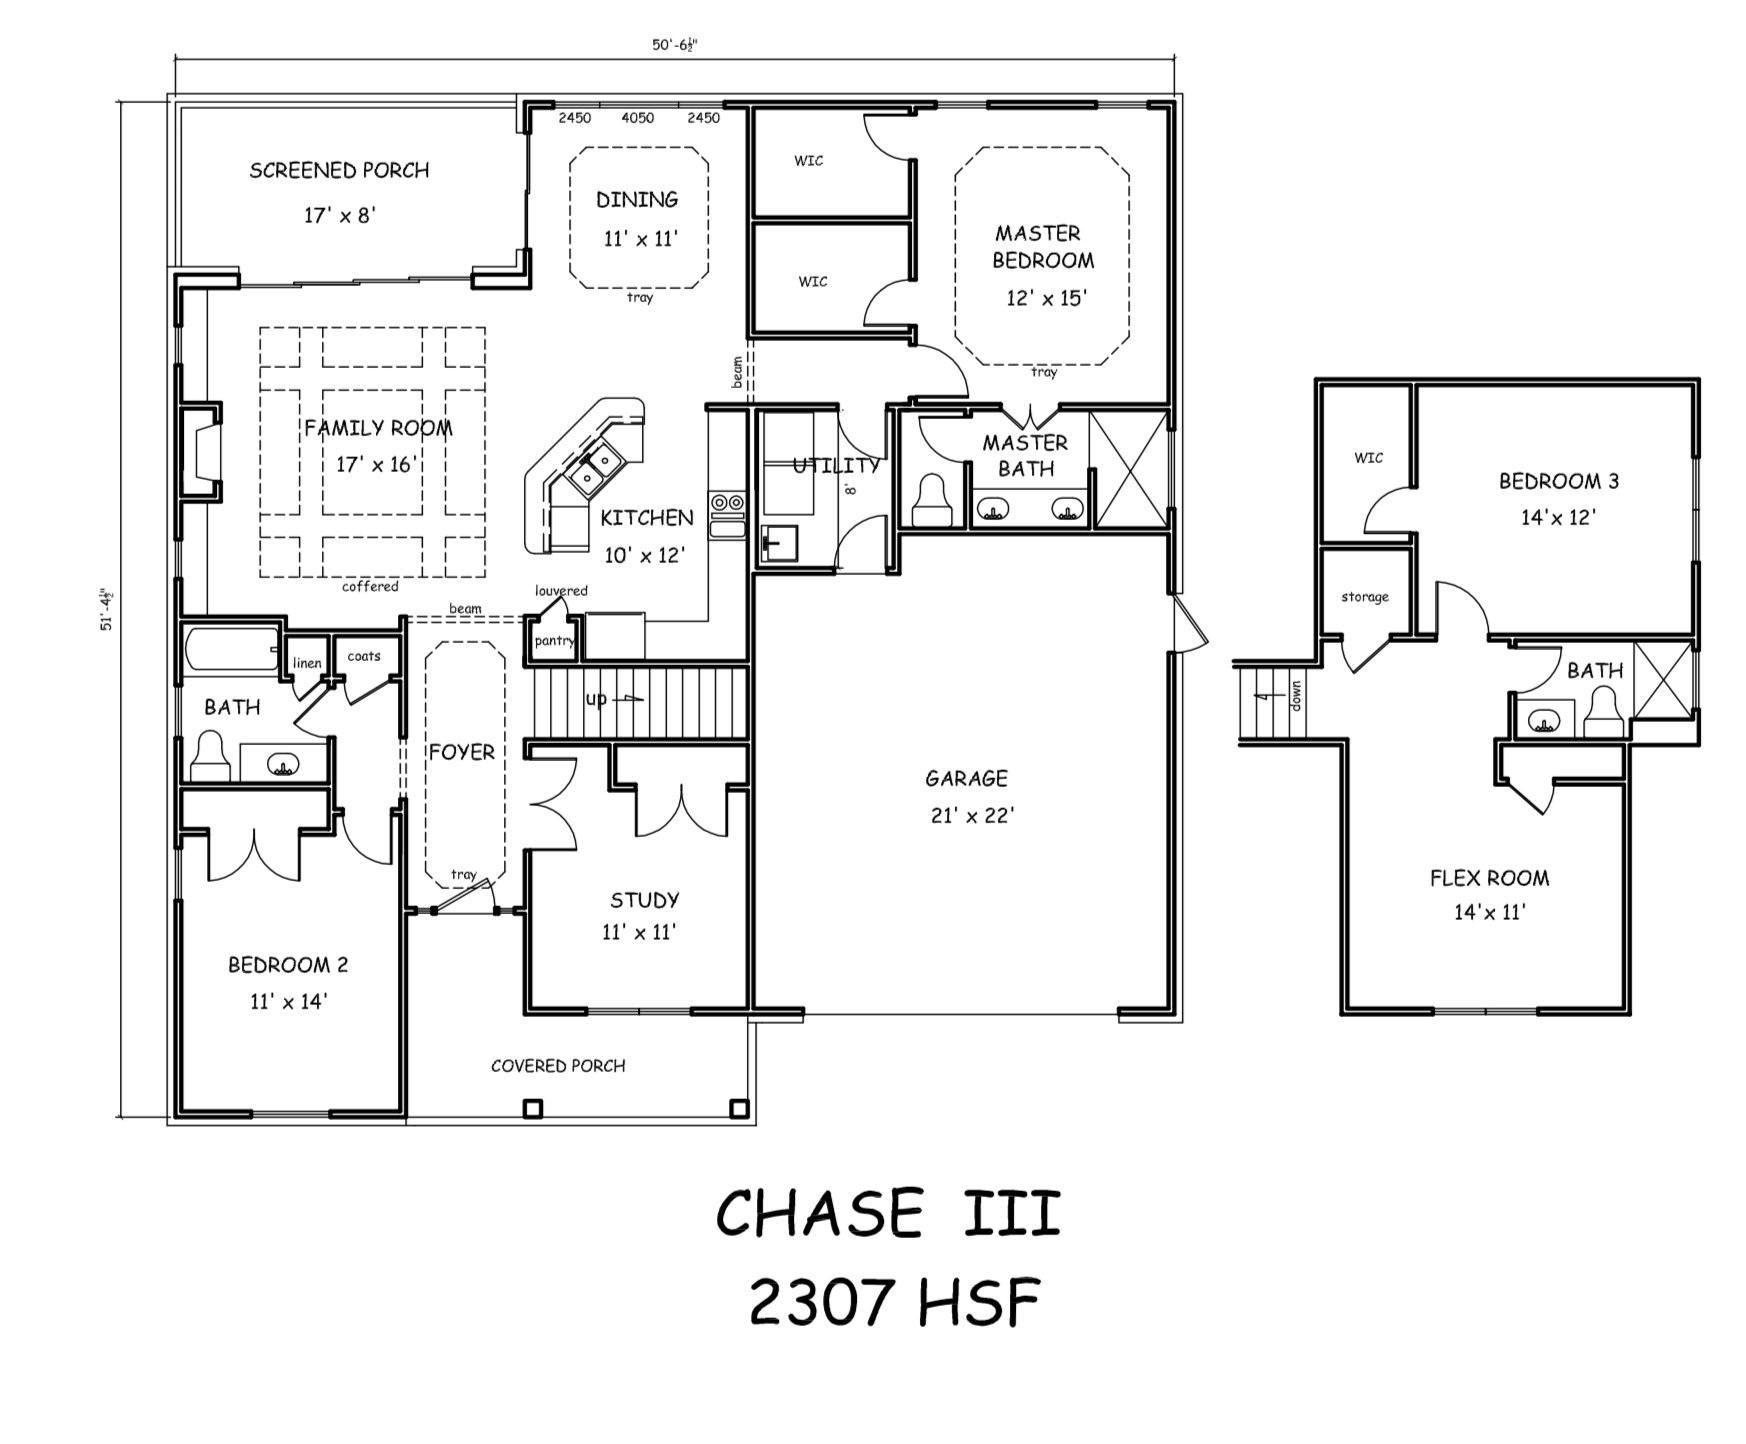 Chase III floor plan image